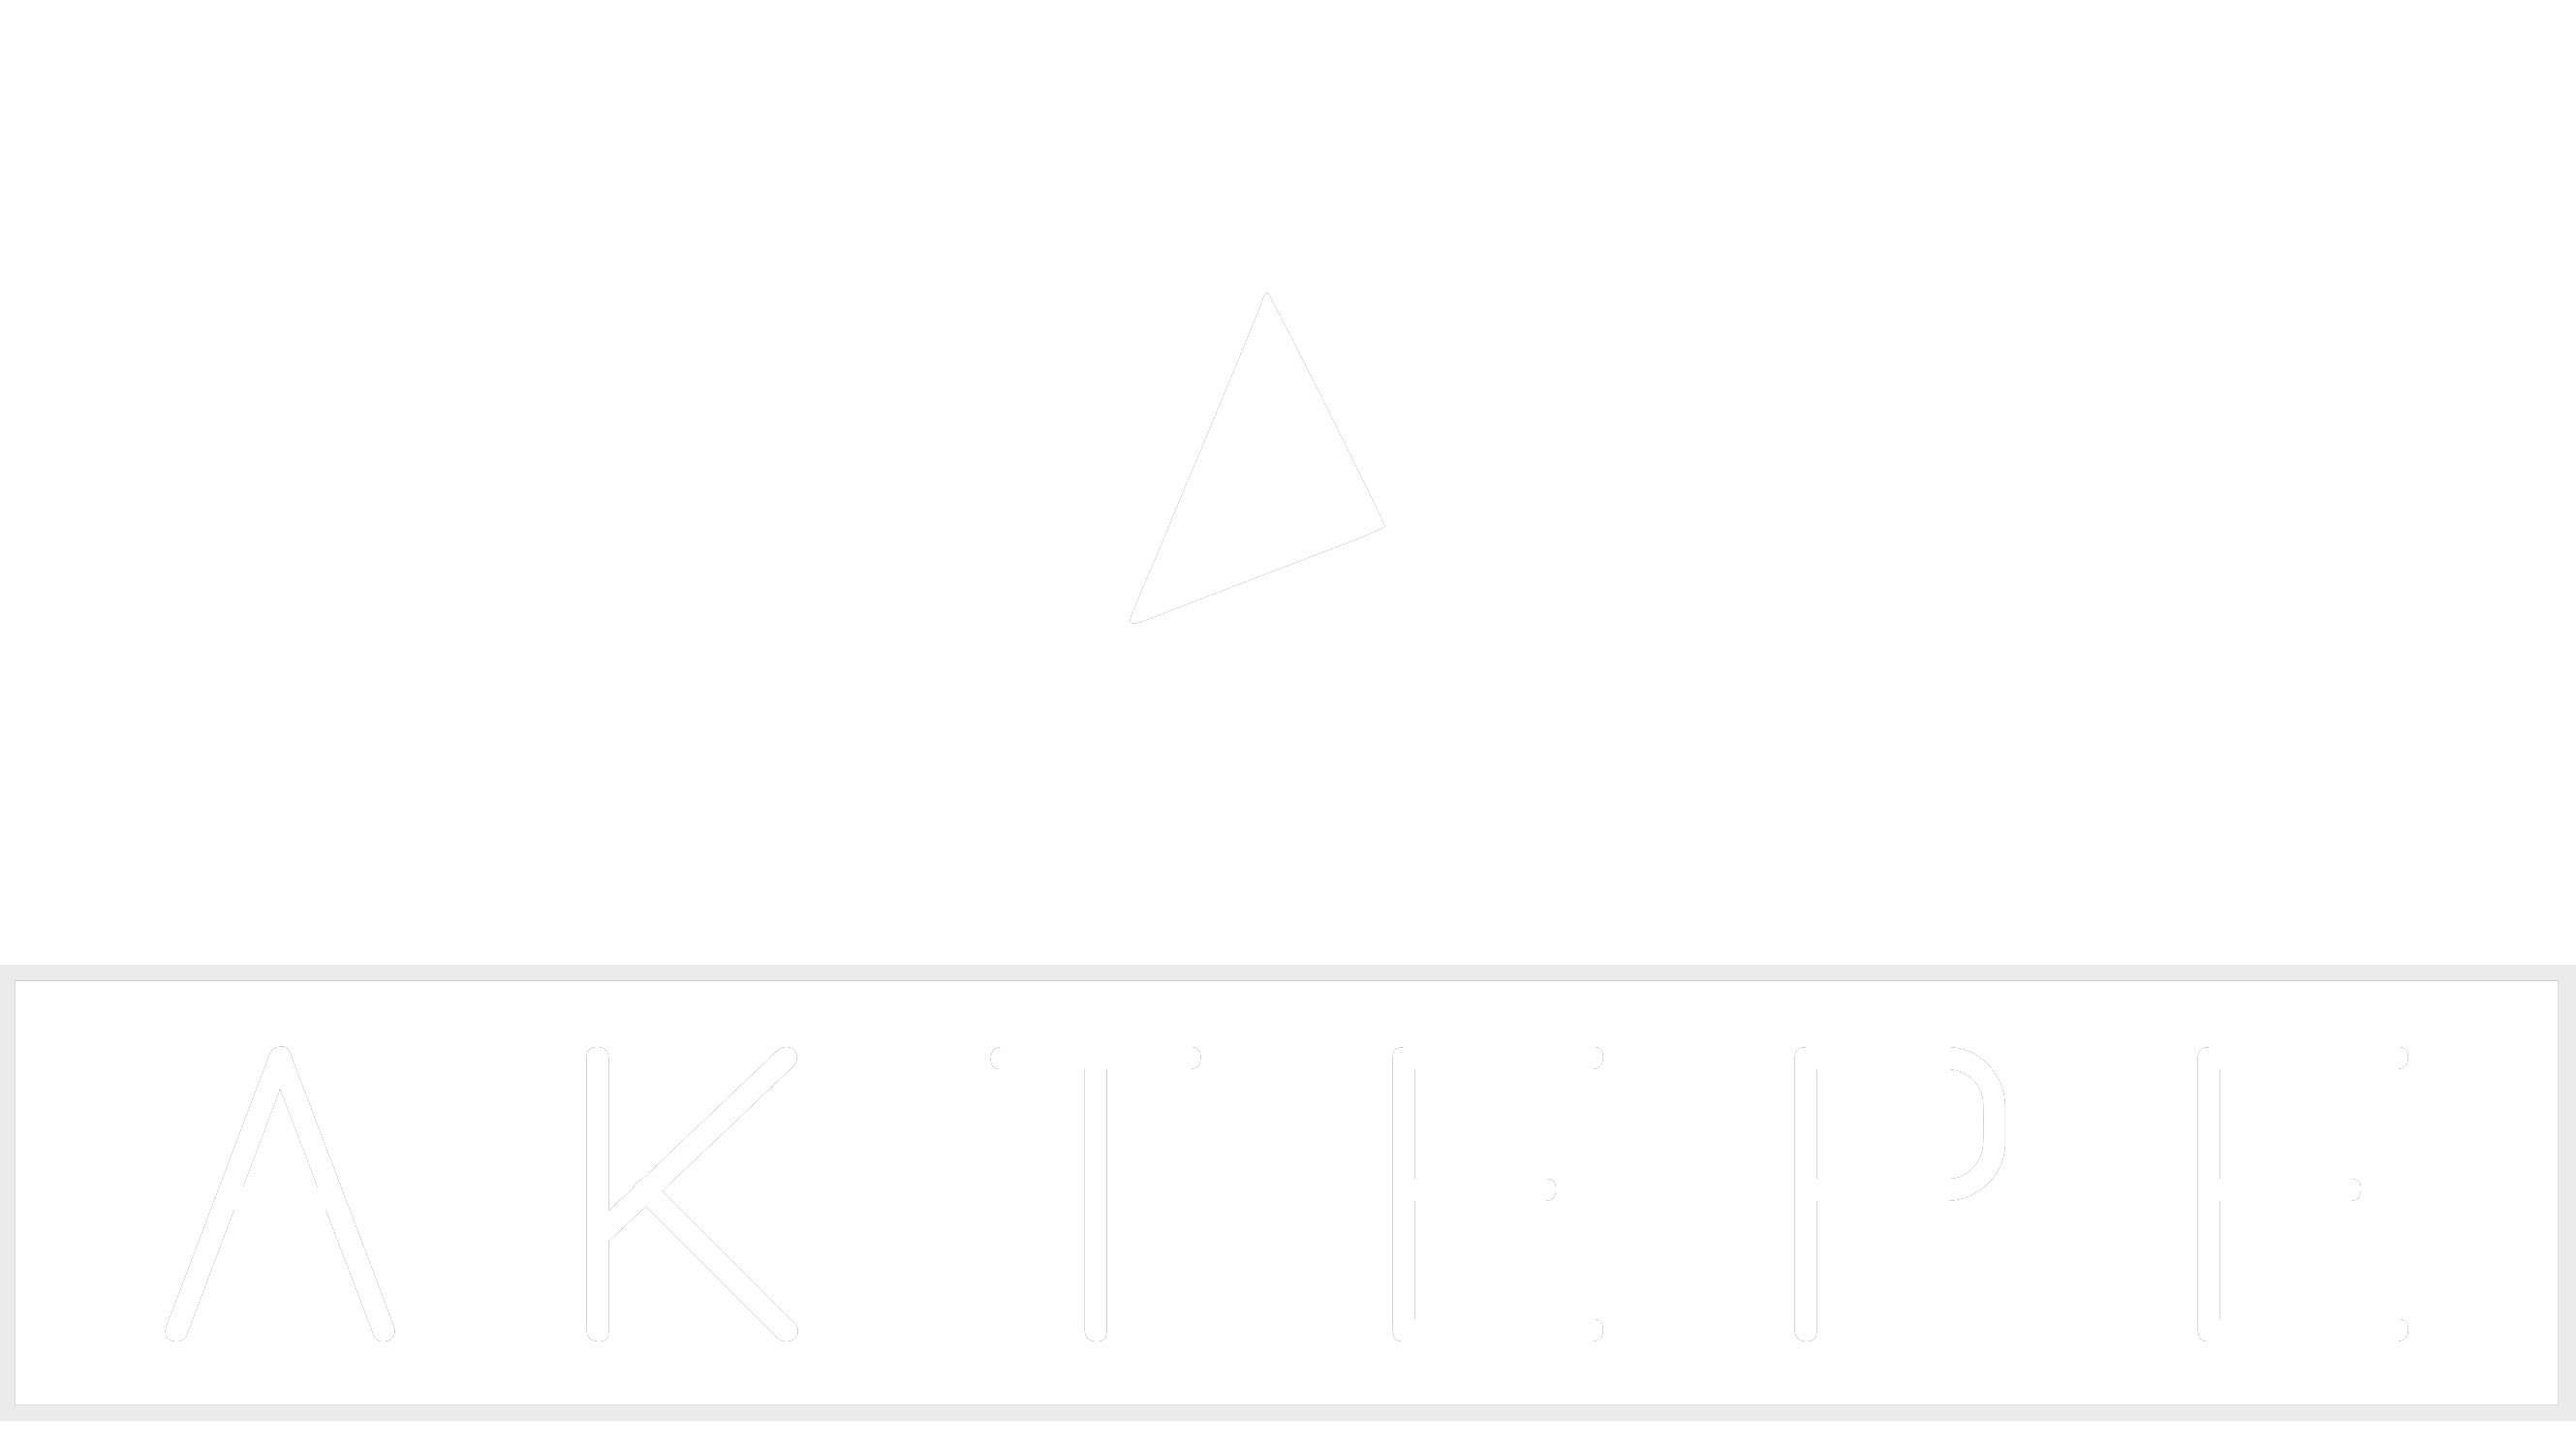 PANAMERA - Aktepe Shop - Oto Müzik Görüntü Navigasyon Sistemleri ve Teyp Çerçevesi Satış Merkezi